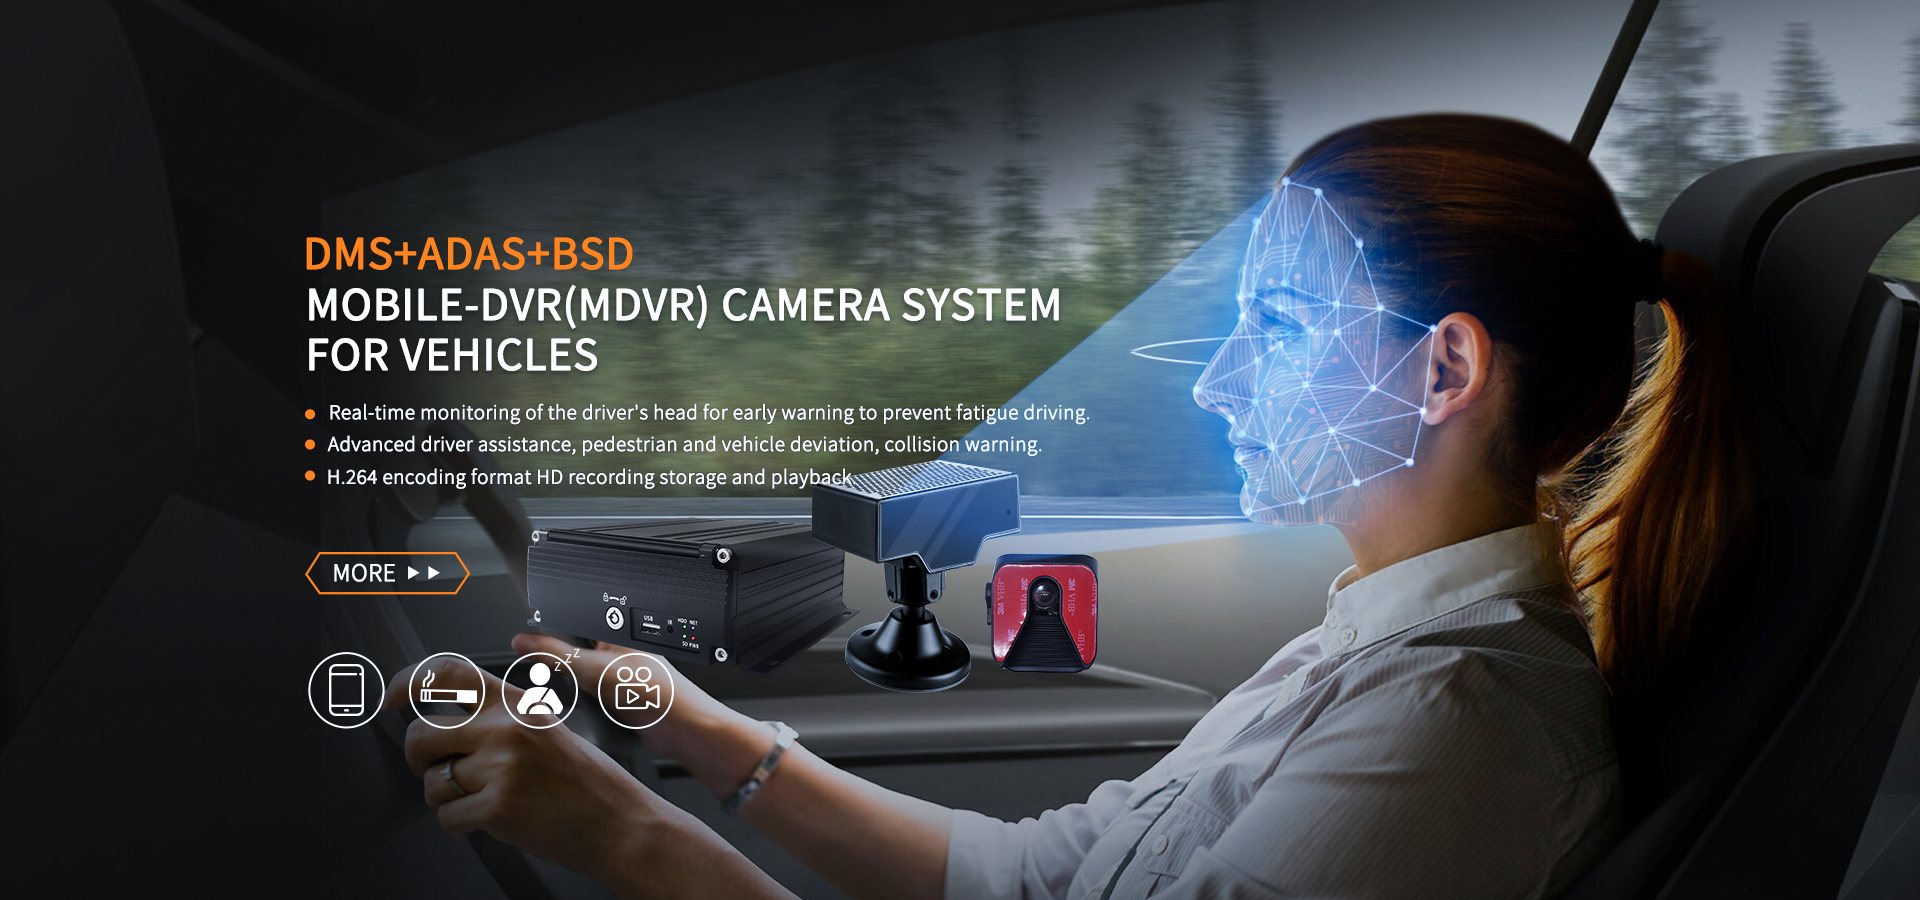 Mobile-DVR(MDVR) Camera System for Vehicles